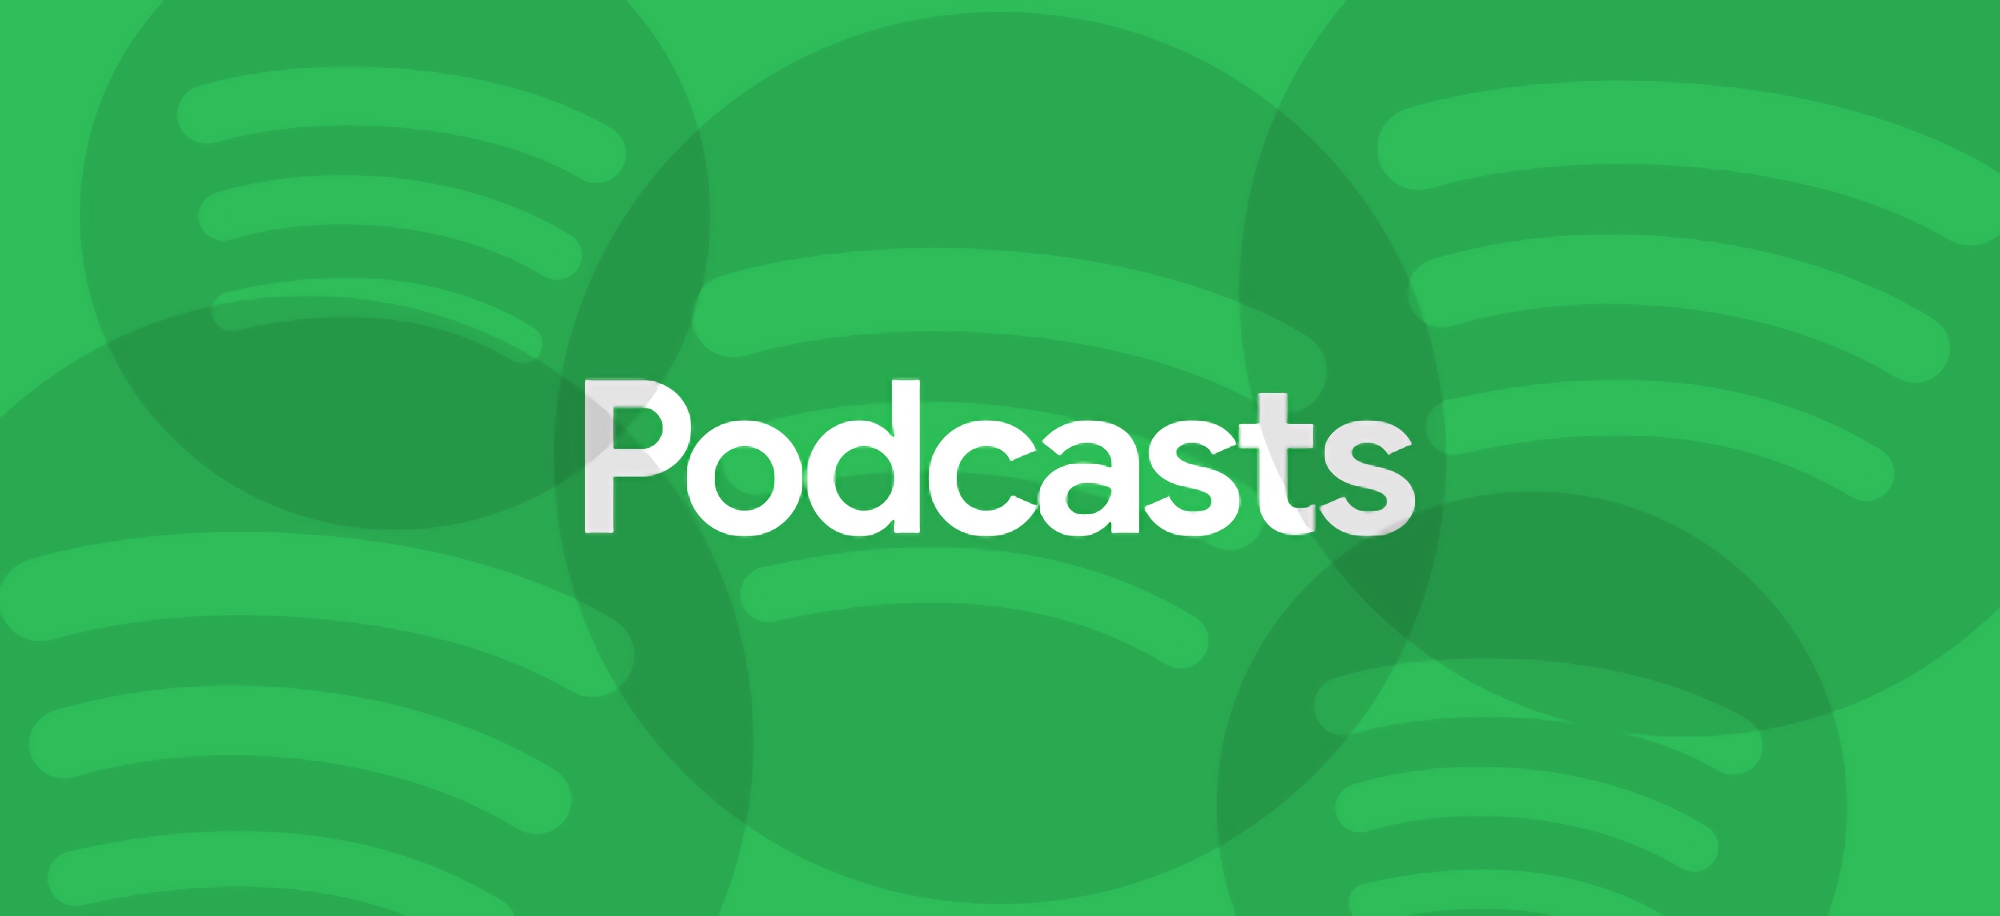 Ukraińscy użytkownicy Spotify uzyskują dostęp do podcastów